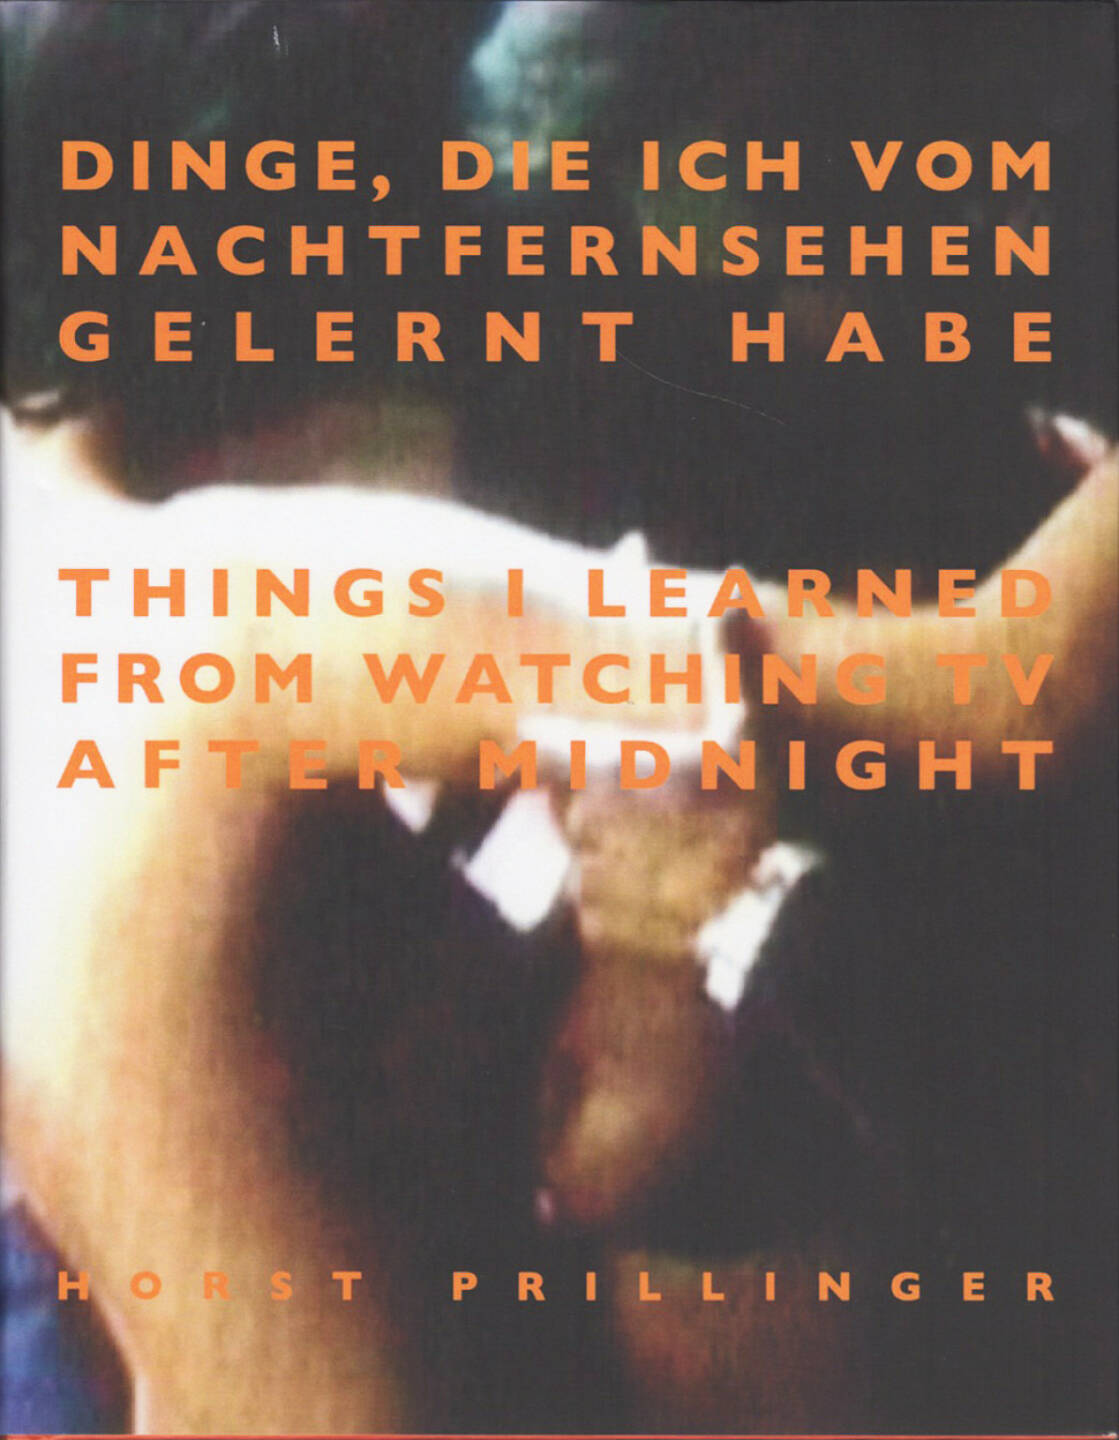 Horst Prillinger - Dinge, die ich vom Nachtfernsehen gelernt habe, Books on Demand 2010, Cover - http://josefchladek.com/book/horst_prillinger_-_dinge_die_ich_vom_nachtfernsehen_gelernt_habe_things_i_learned_from_watching_tv_after_midnight